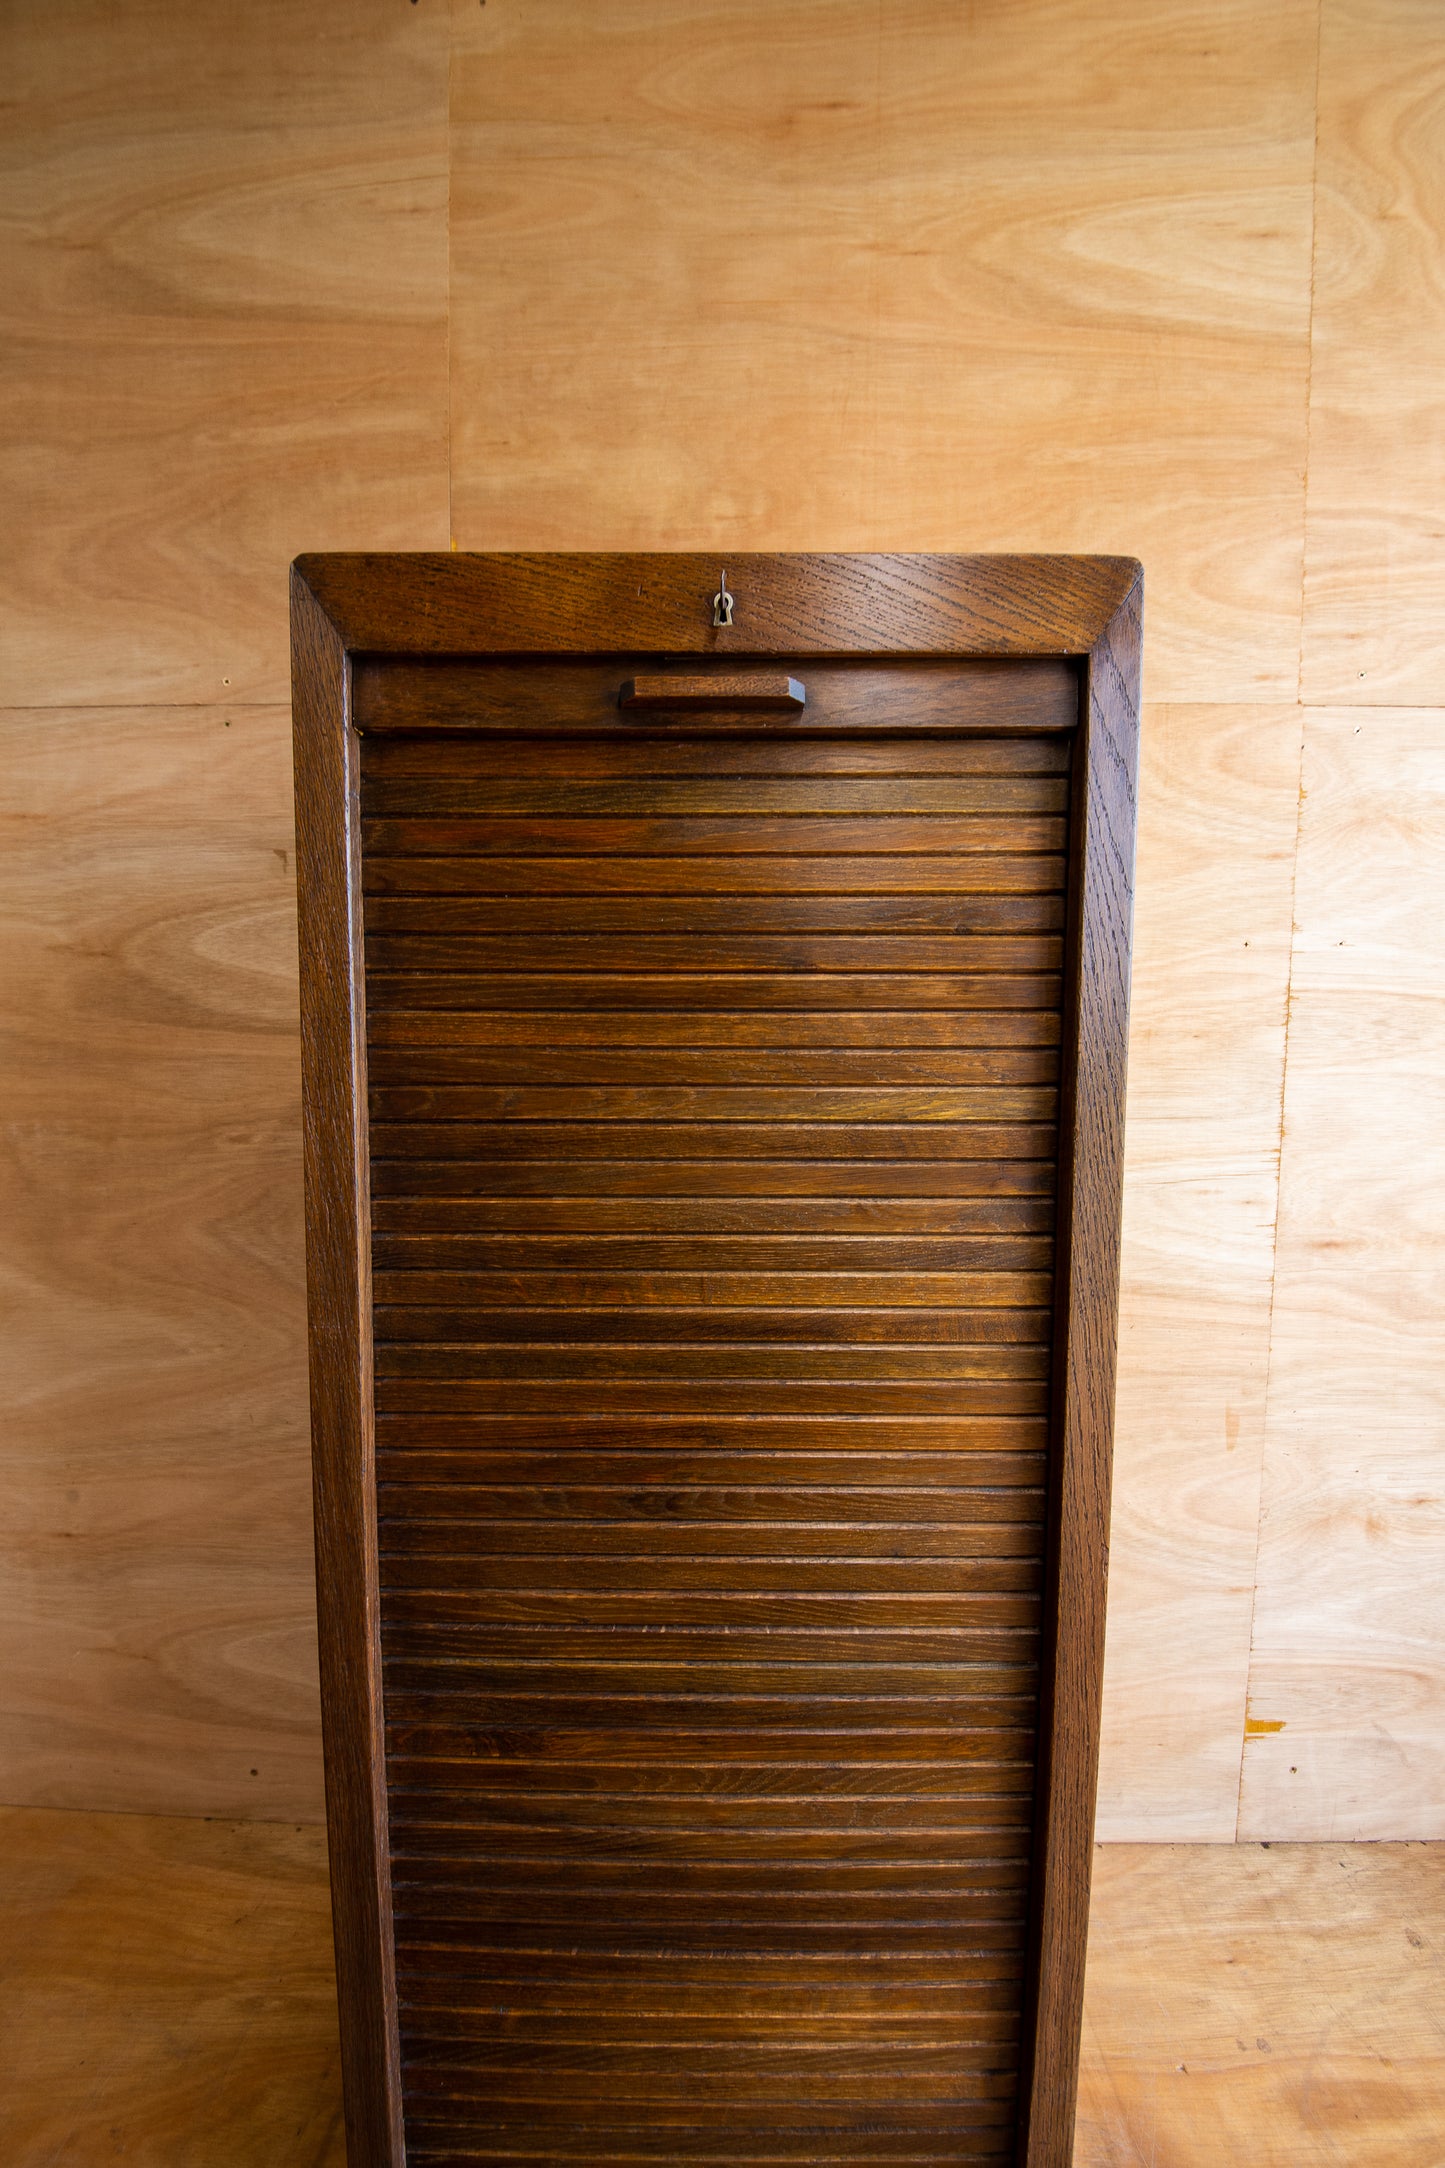 Vintage School Tambour Cabinet